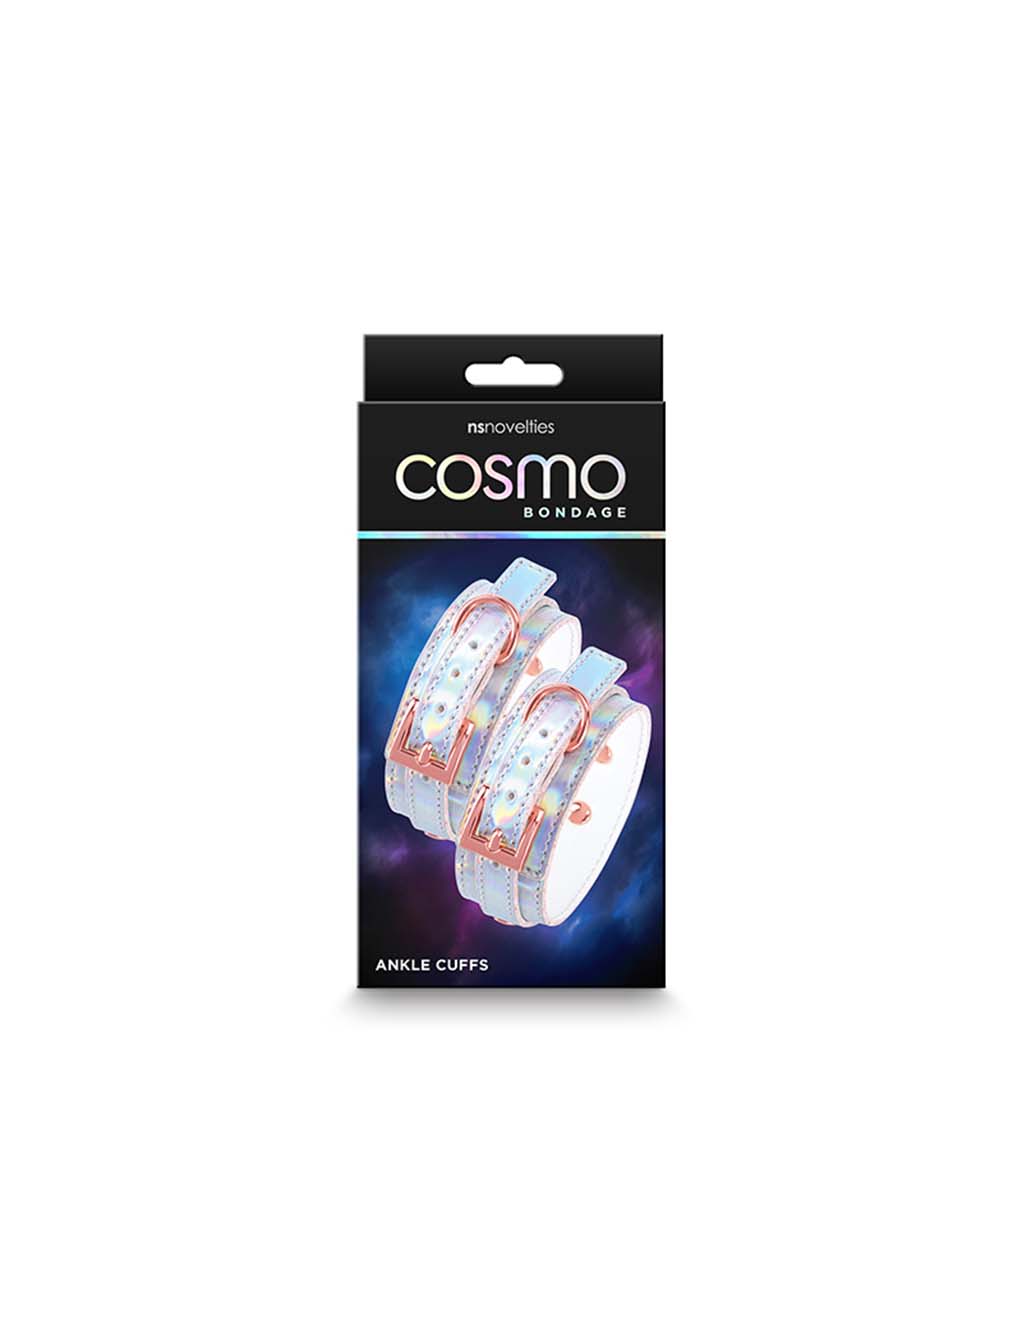 Cosmo Bondage Ankle Cuffs- Box